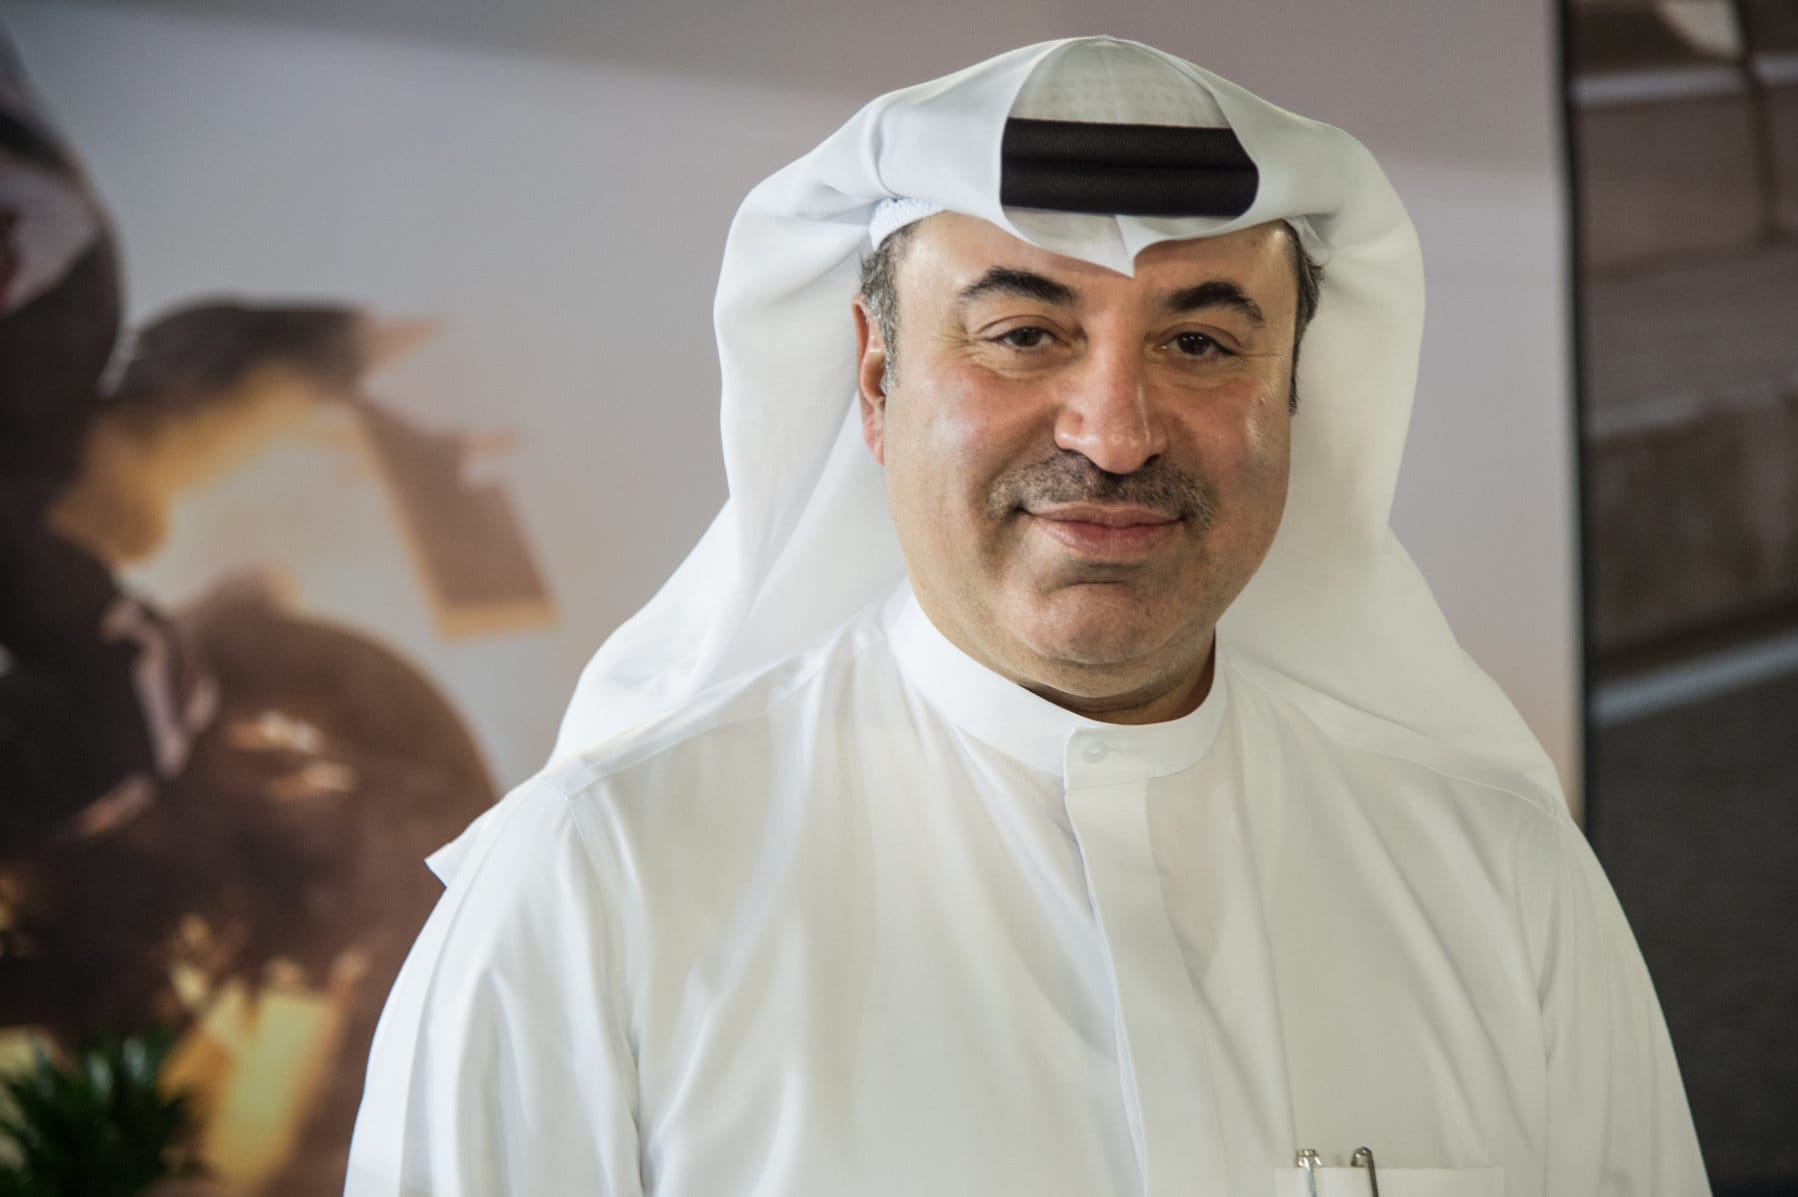 Omar Alfardan ist einer der reichsten Scheichs des Emirats Qatar. Dem Geschäftsmann gehören Luxushotels, Importgesellschaften oder eine Beteiligung an der nationalen Bank. Doch seine wahre Leidenschaft sind Autos und Motoräder.